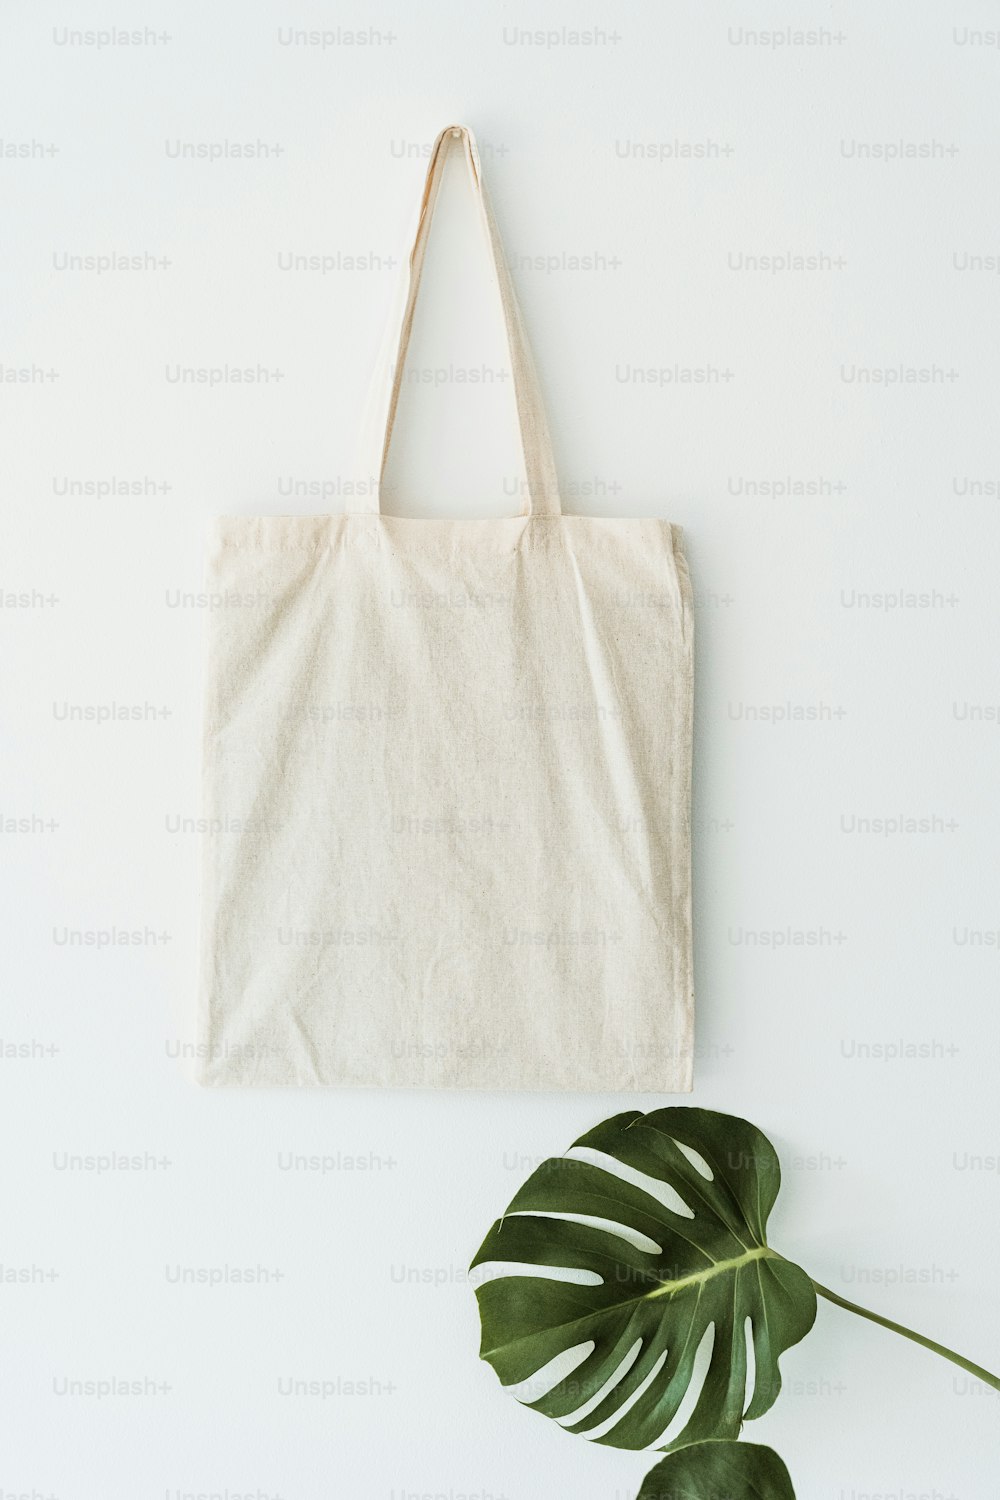 Una bolsa blanca junto a una planta verde